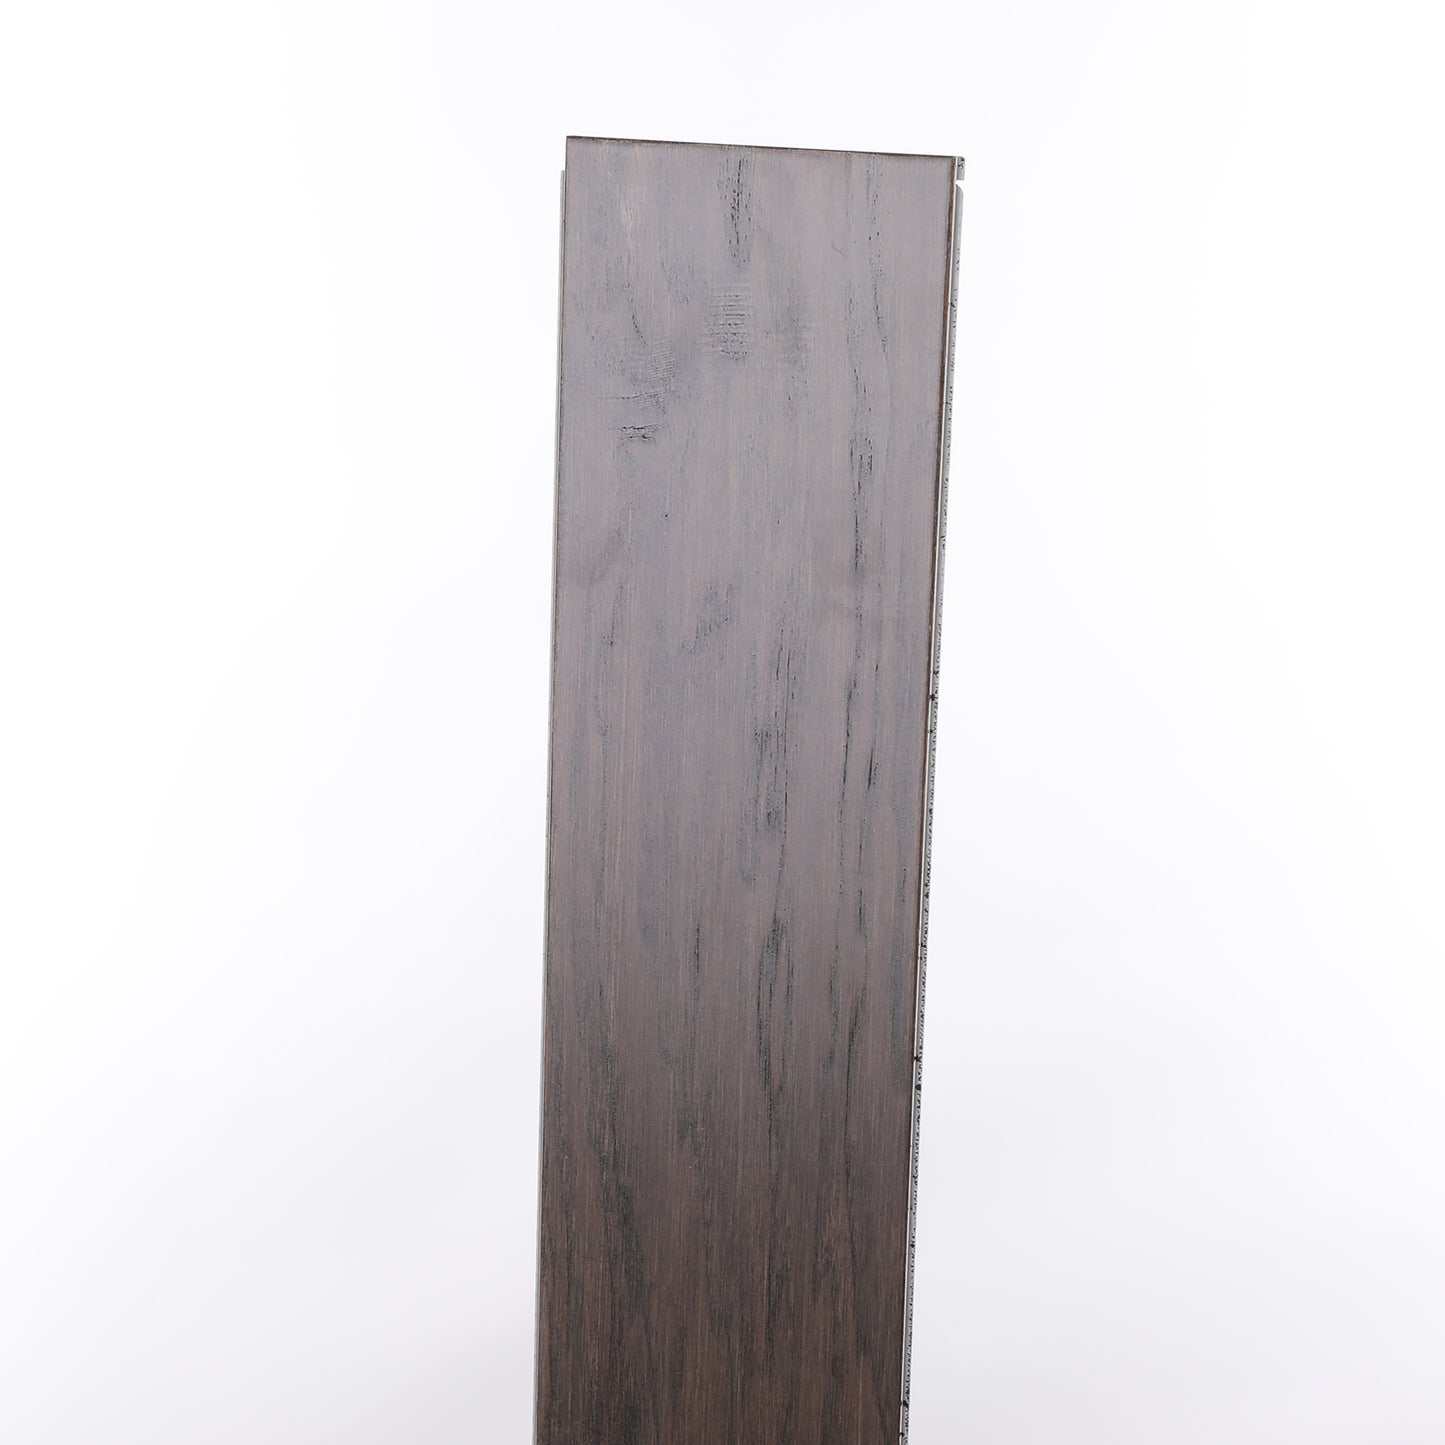 7mm Shadow Gray Waterproof Engineered Hardwood Flooring 5 in. Wide x Varying Length Long